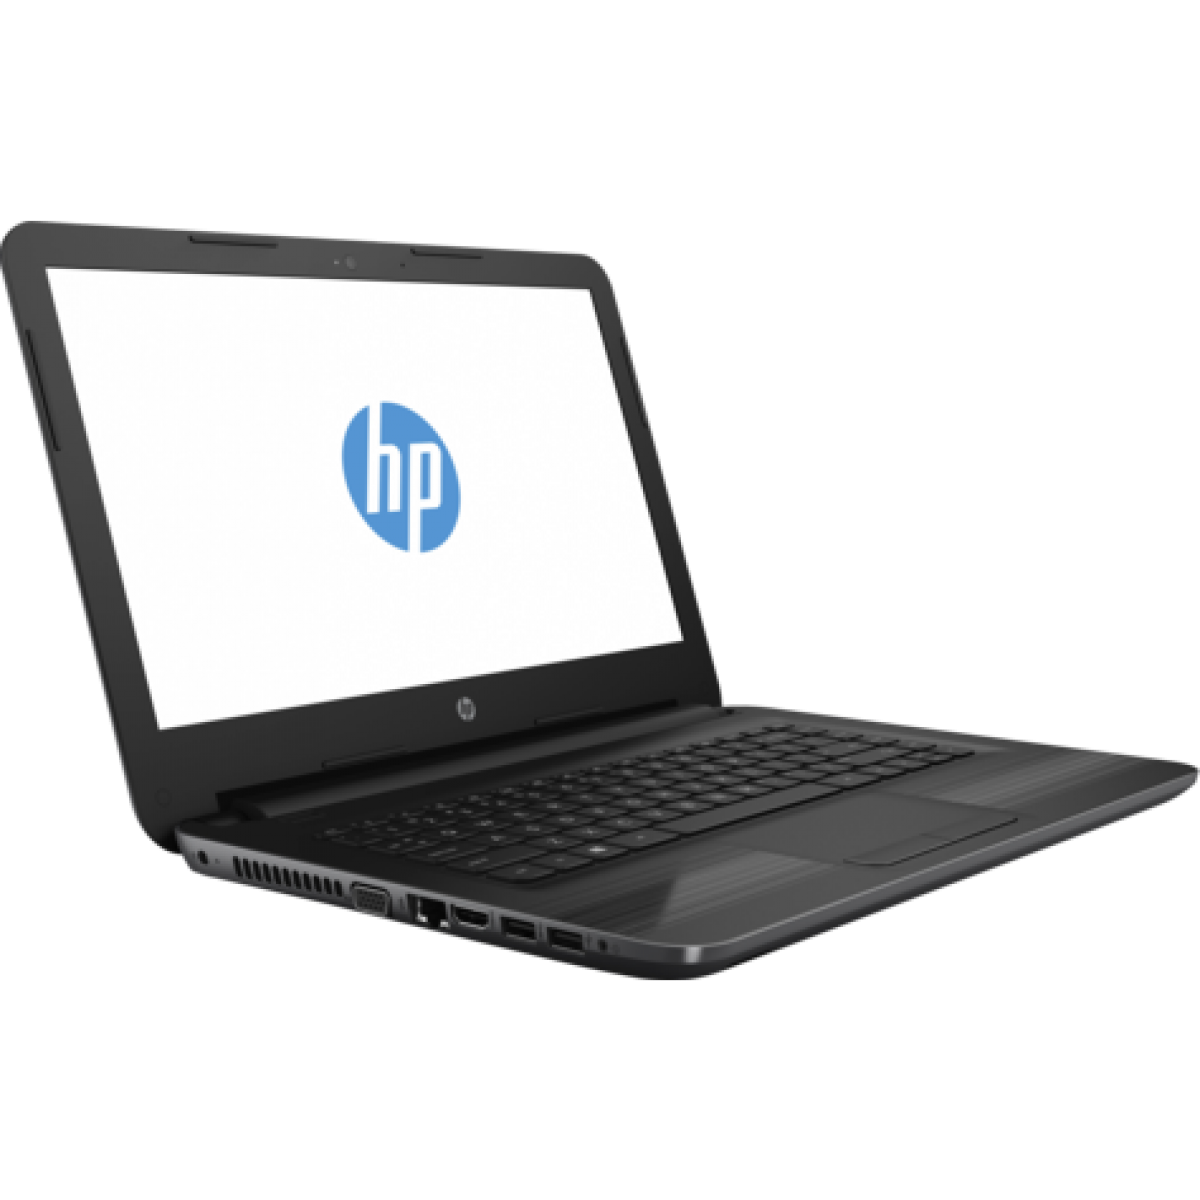 HP Laptop PNG File